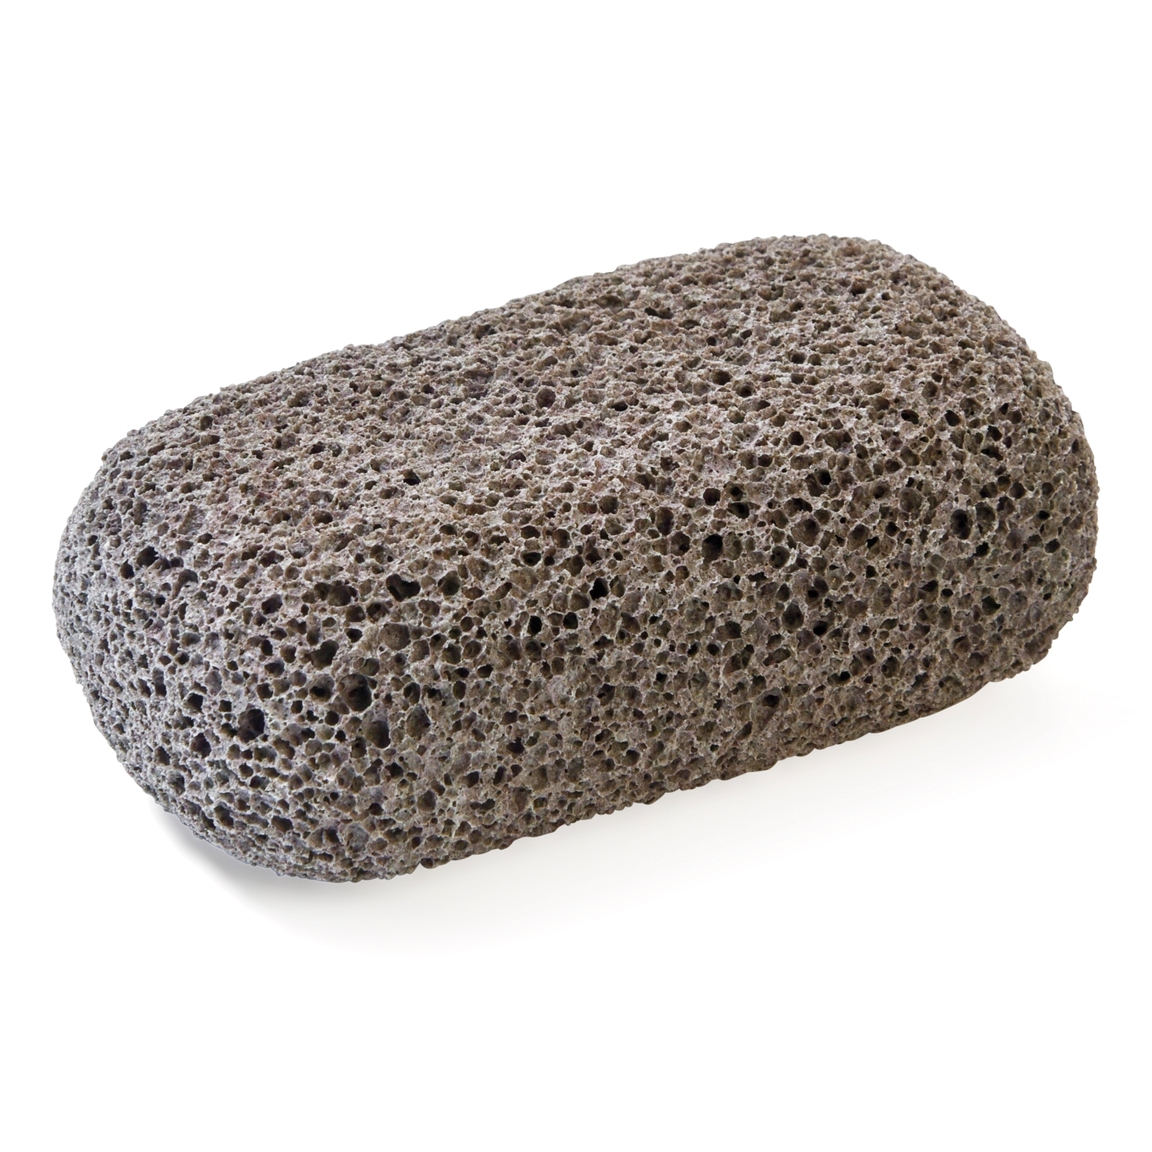 Brosse pierre biseautée Pierre ponce, sans produit chimique